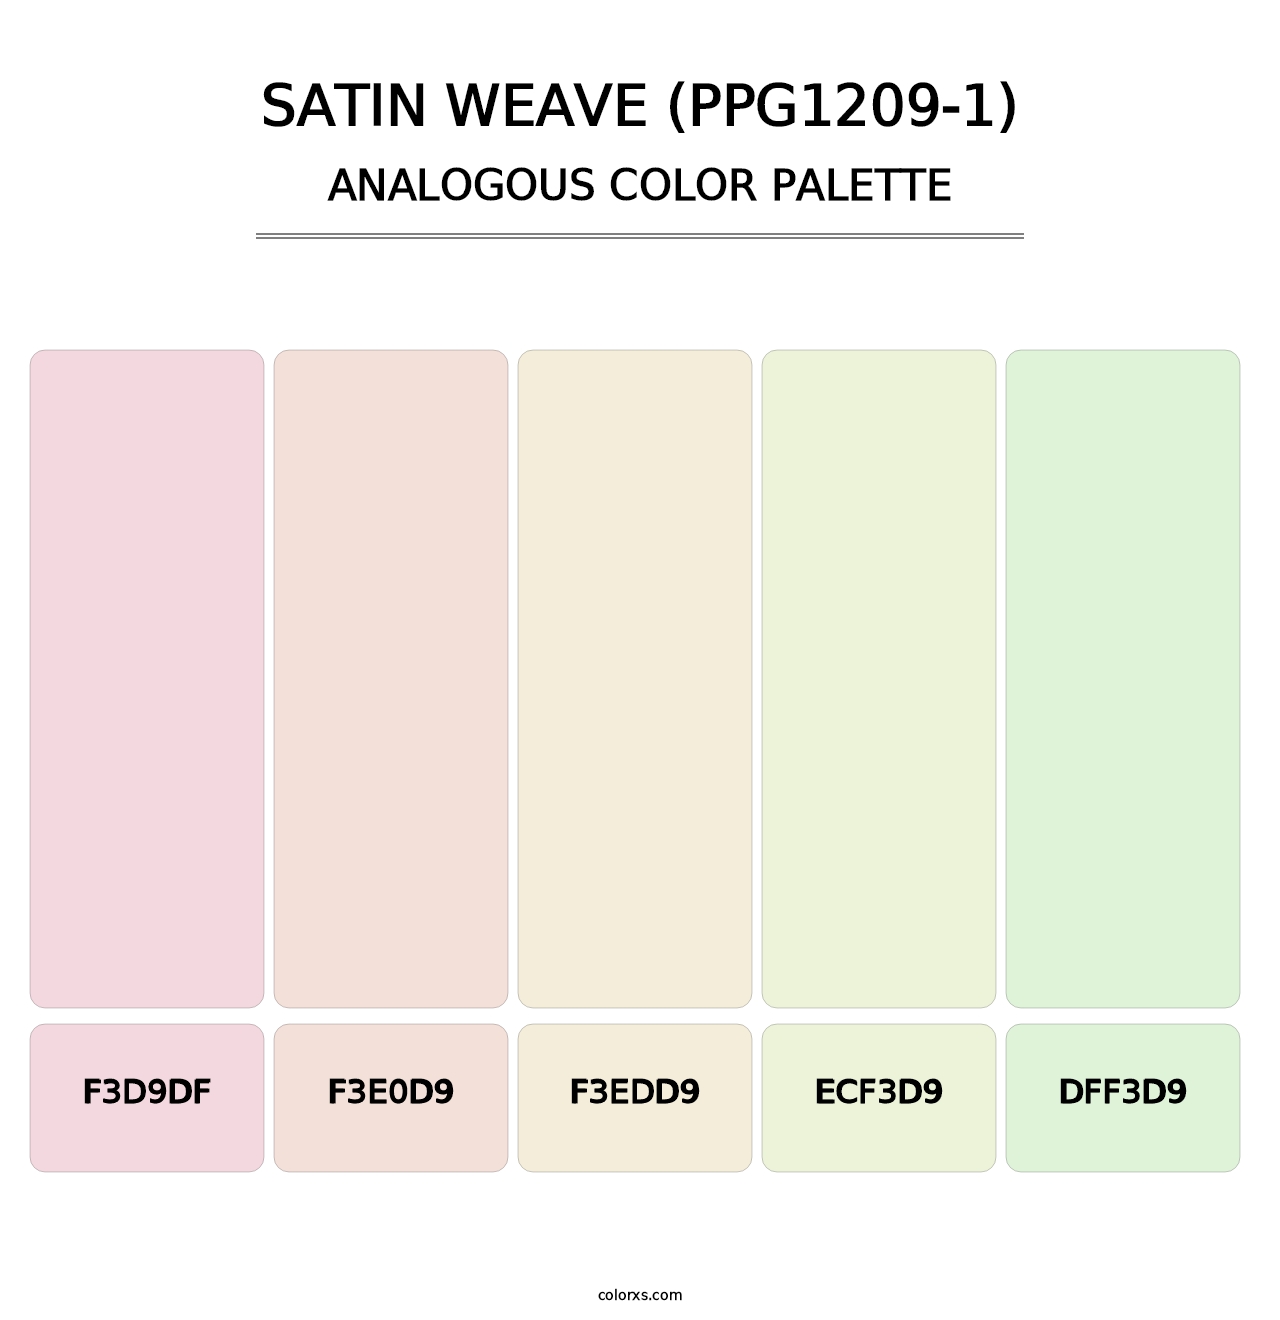 Satin Weave (PPG1209-1) - Analogous Color Palette